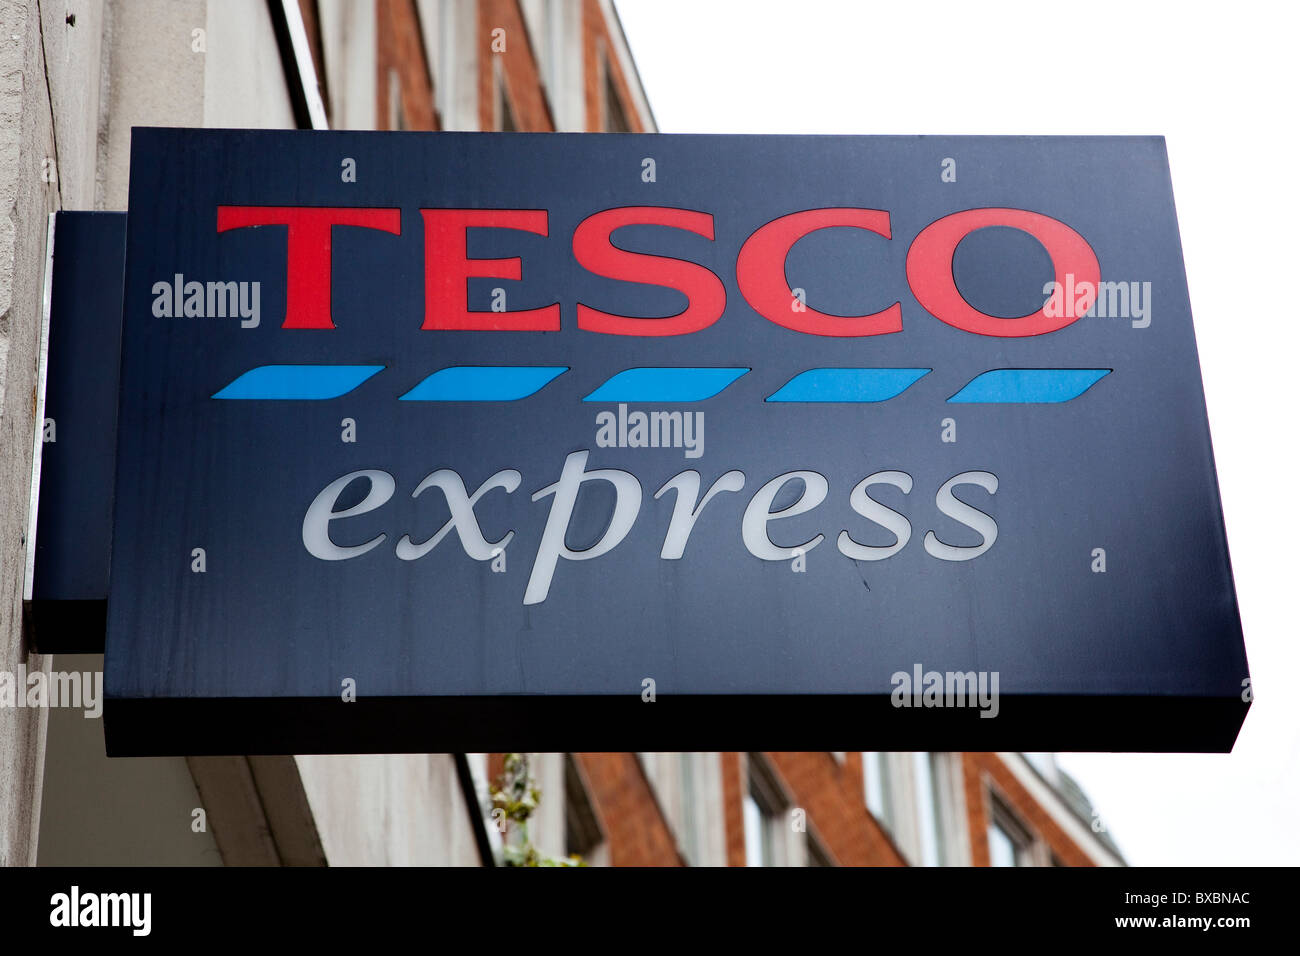 Logo sur un magasin de la chaîne de supermarchés Tesco, Tesco Express, Londres, Angleterre, Royaume-Uni, Europe Banque D'Images